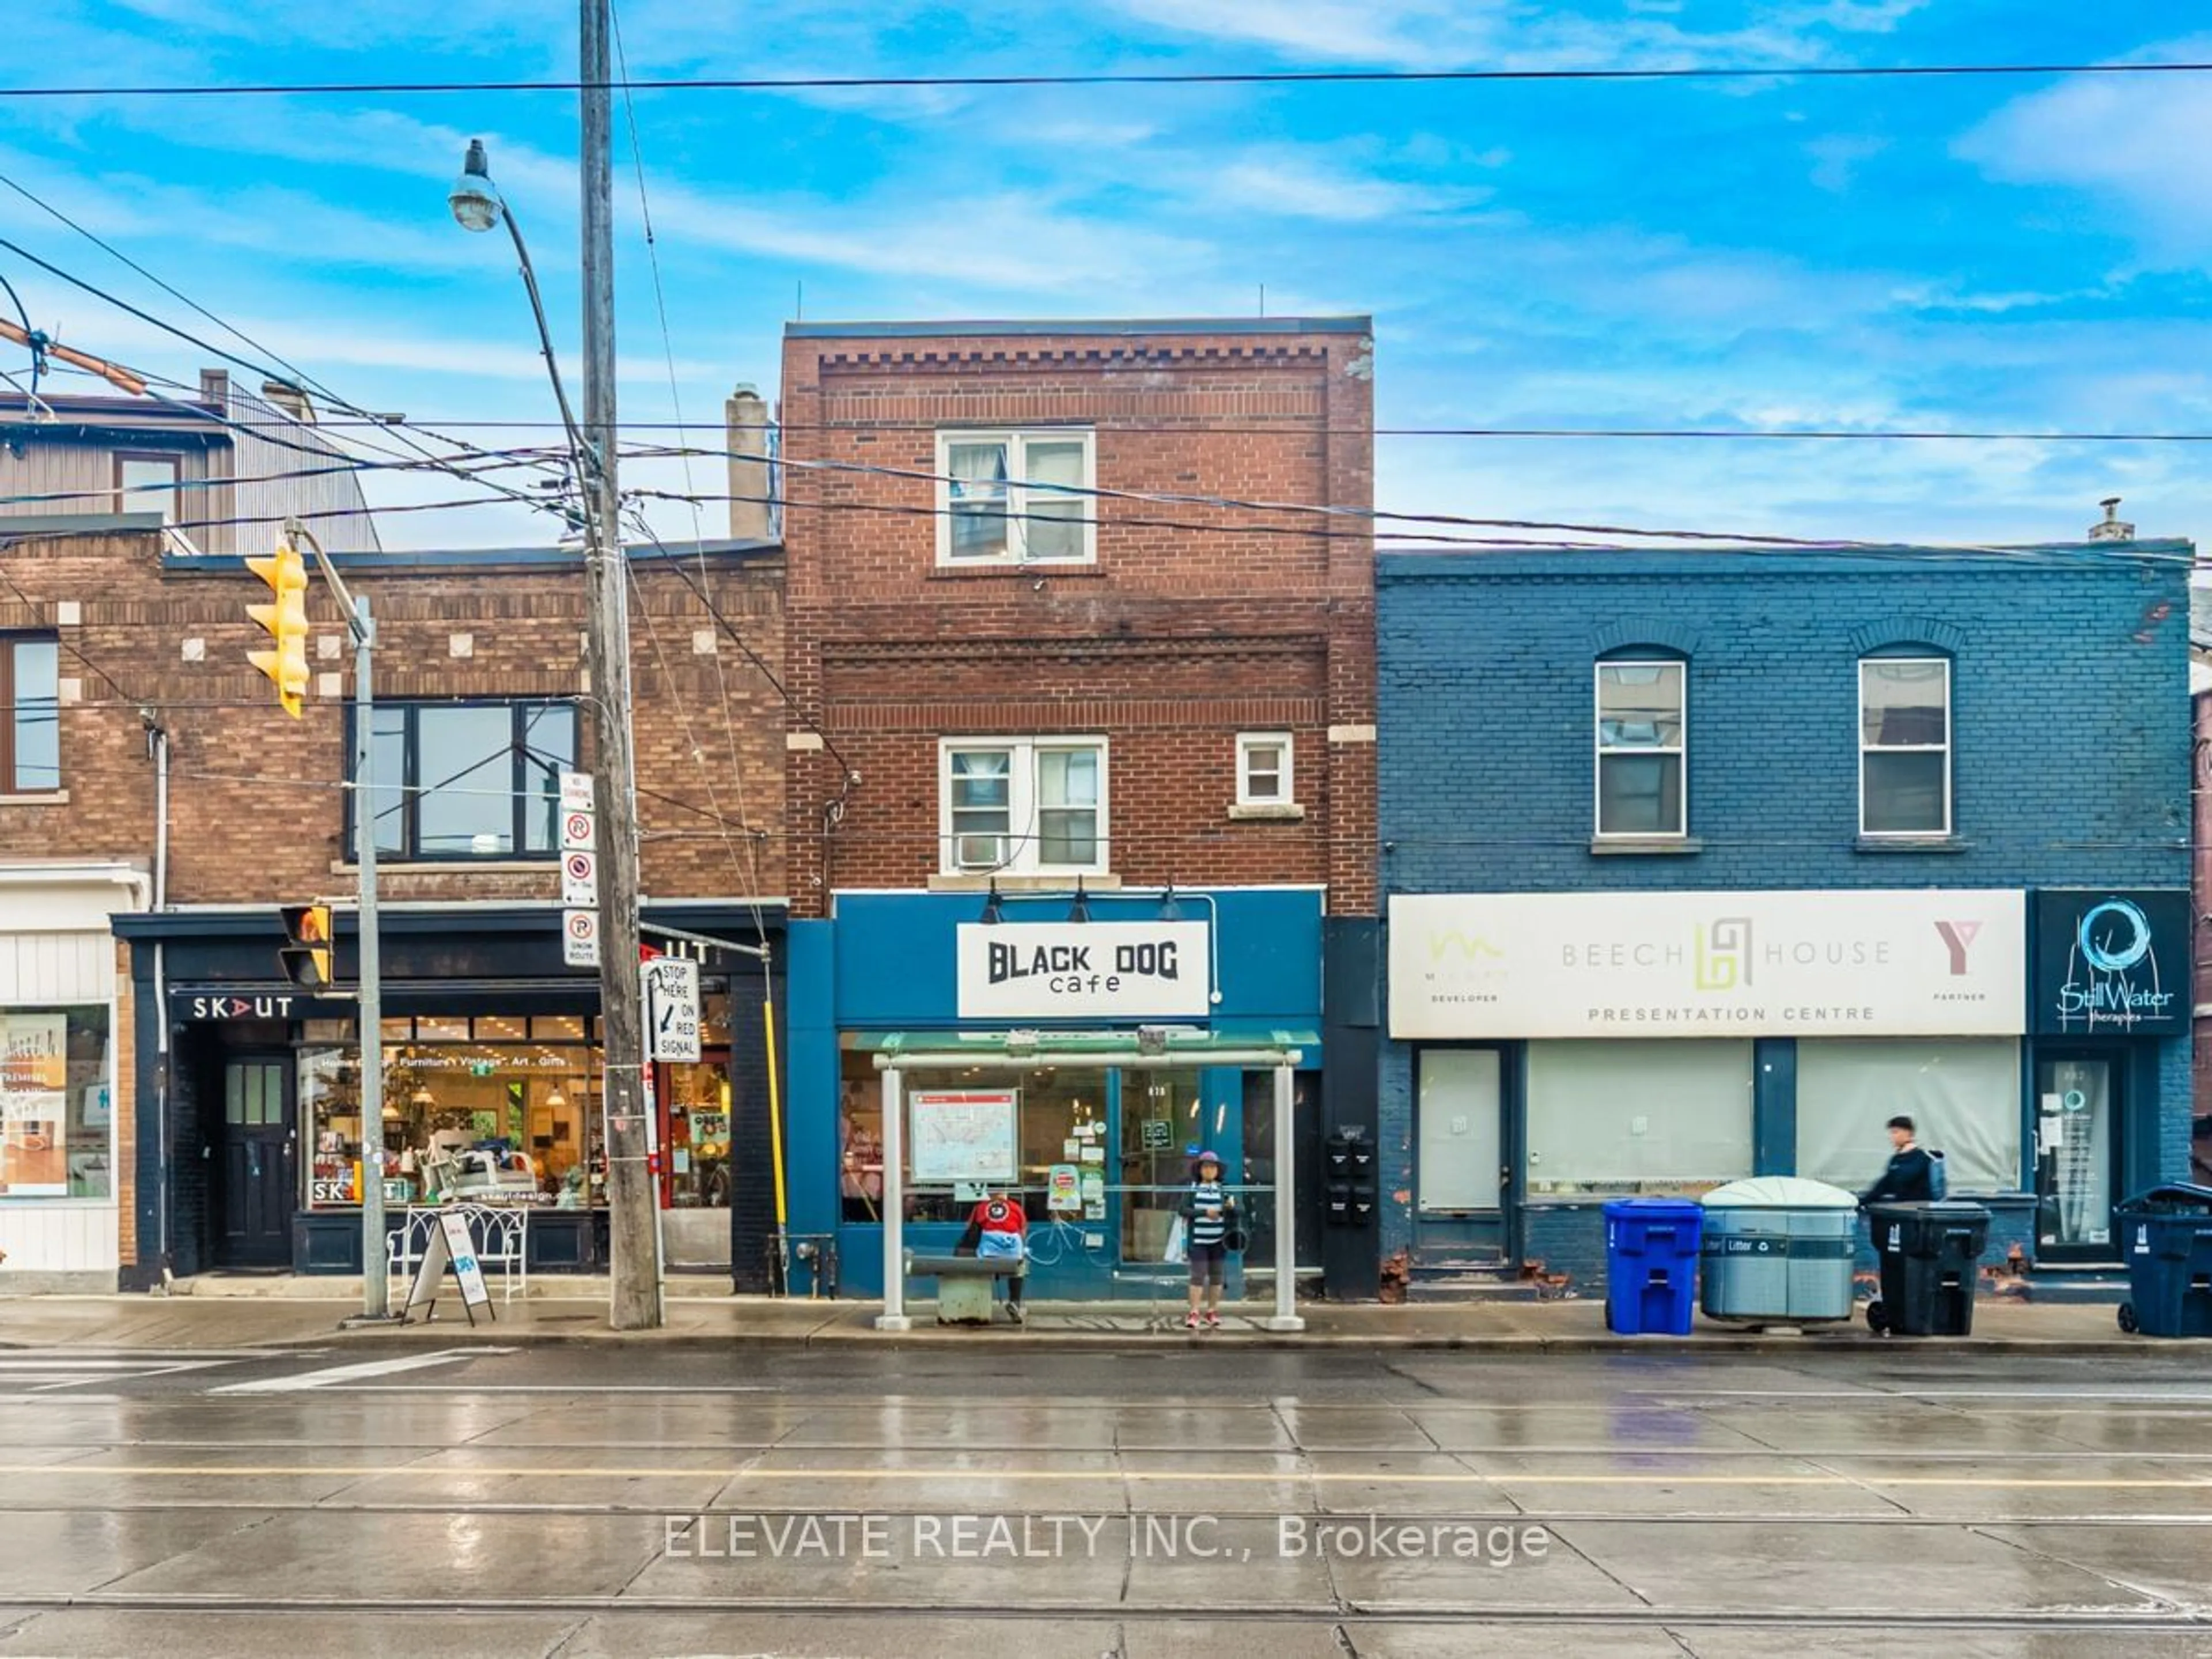 Street view for 878 Kingston Rd, Toronto Ontario M4E 1S3